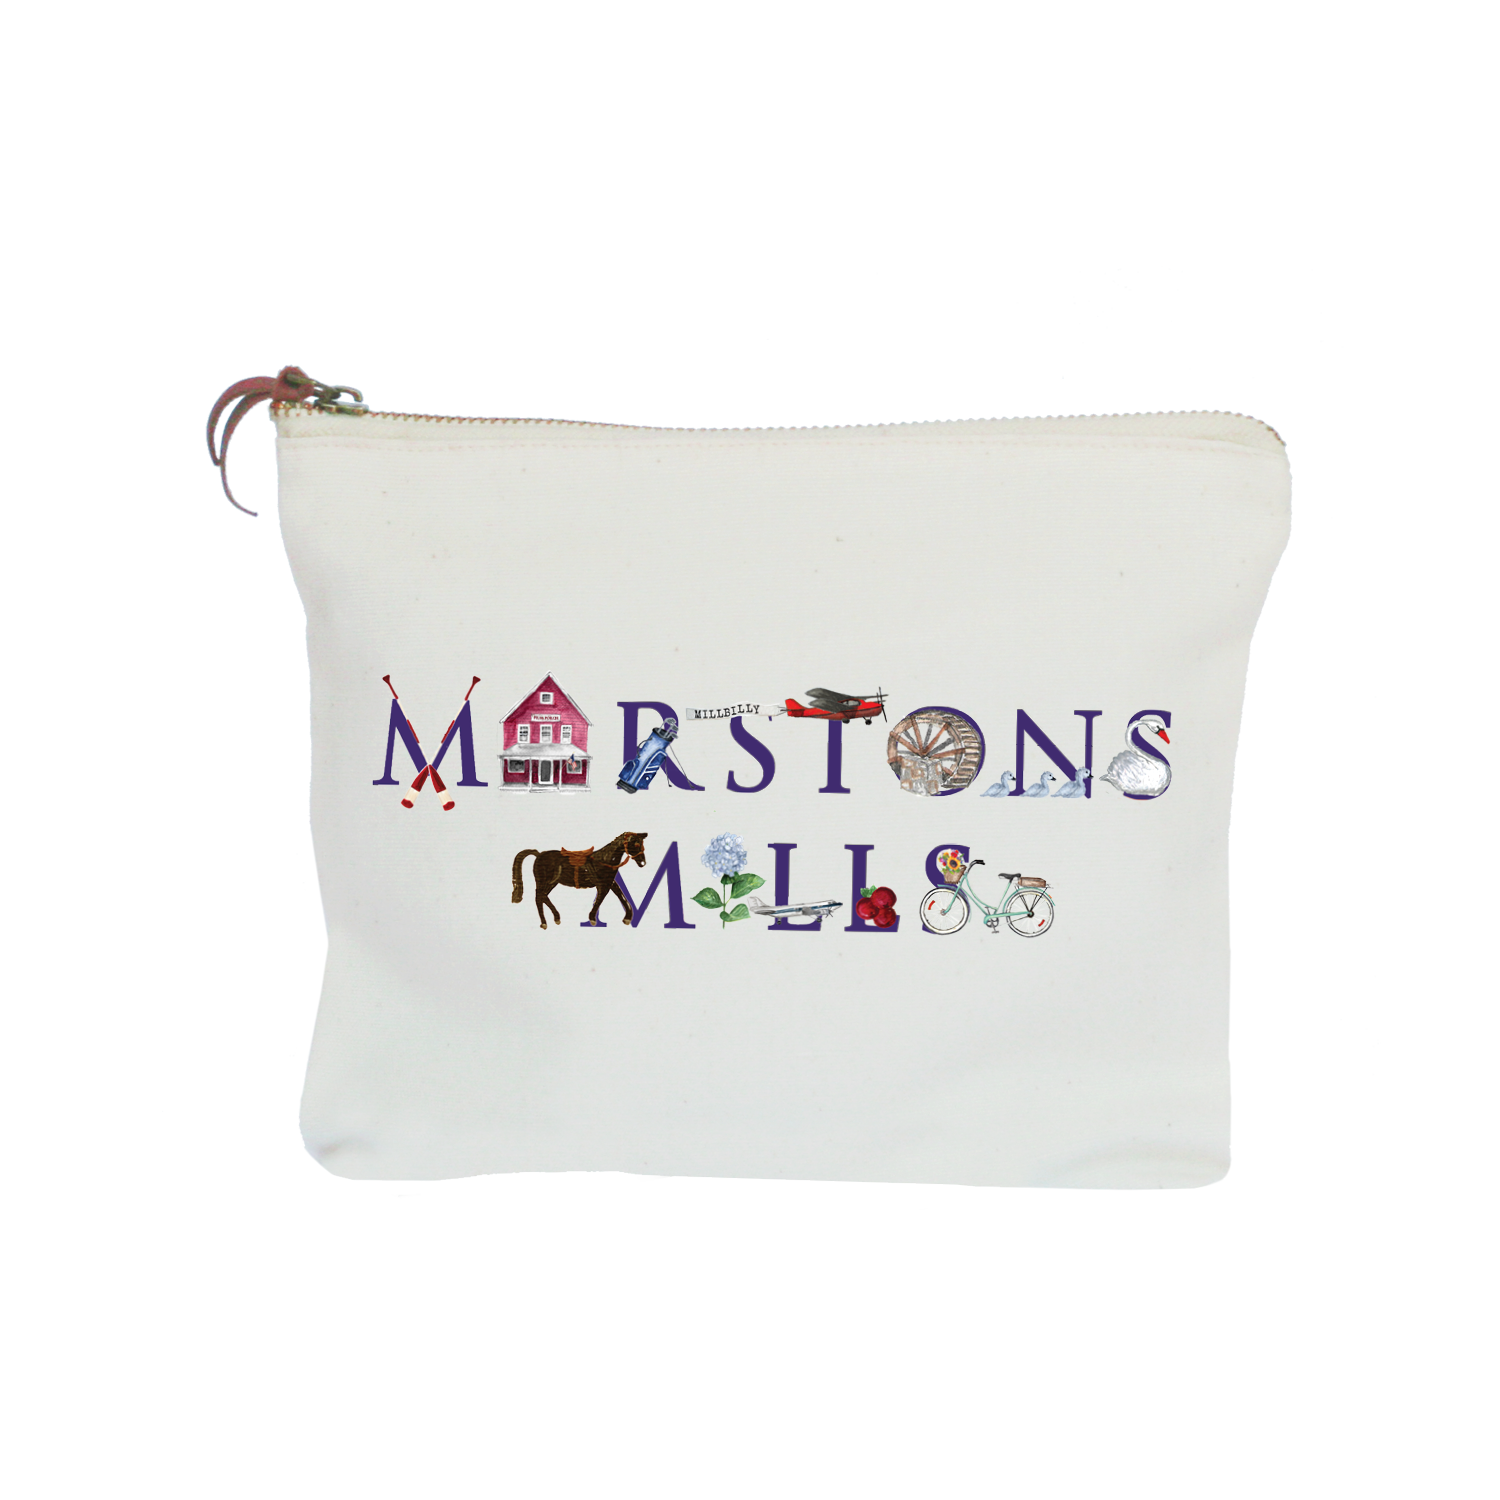 marstons mills zipper pouch